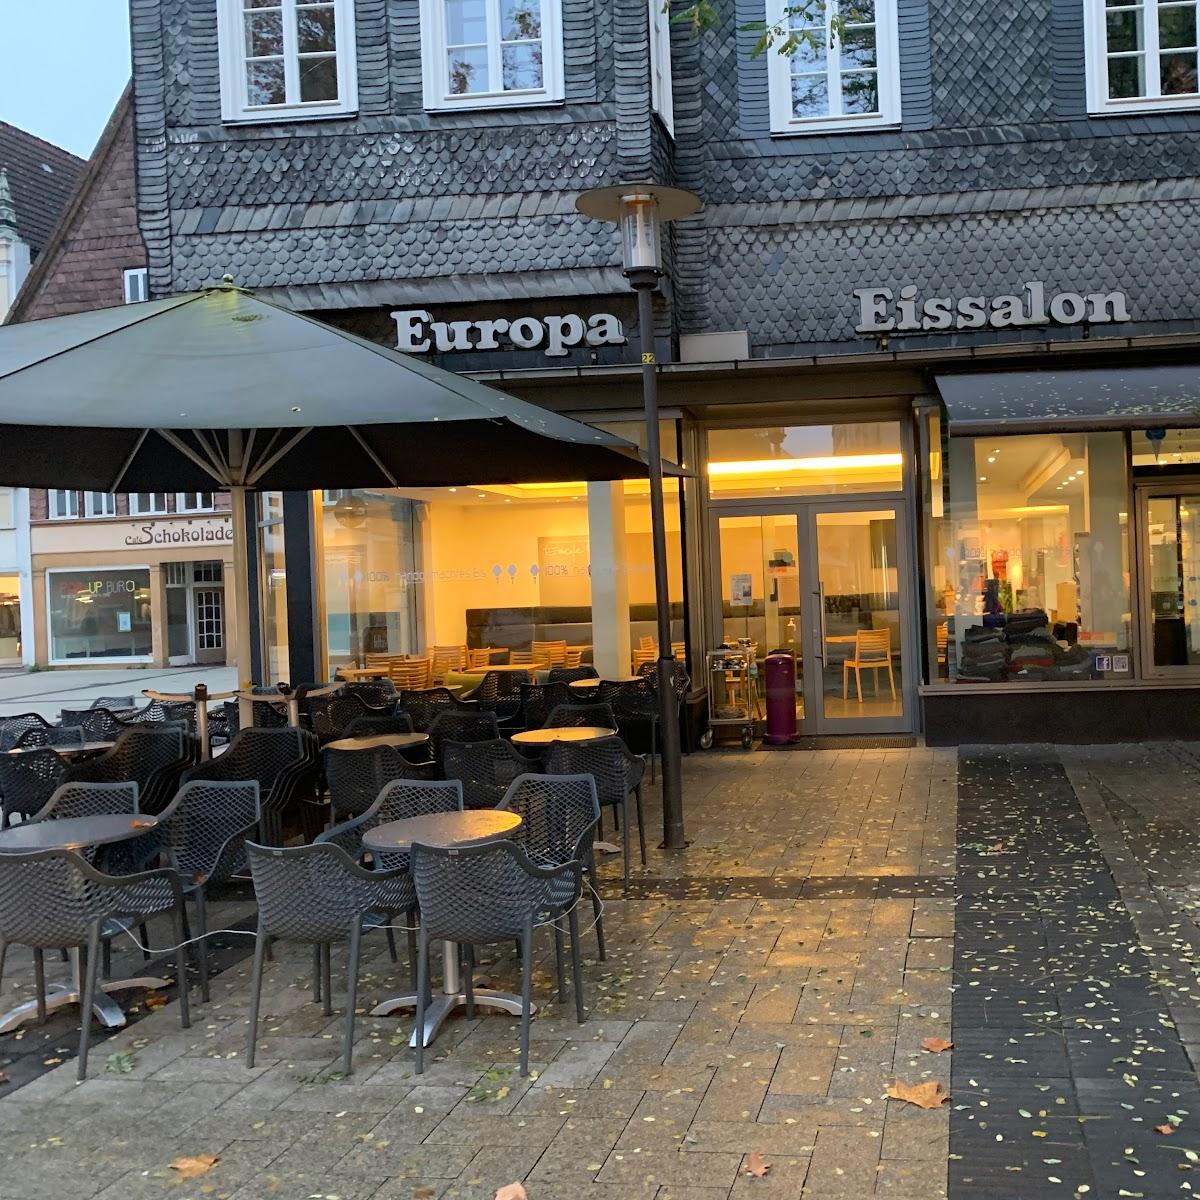 Restaurant "Eiscafé Europa" in Detmold